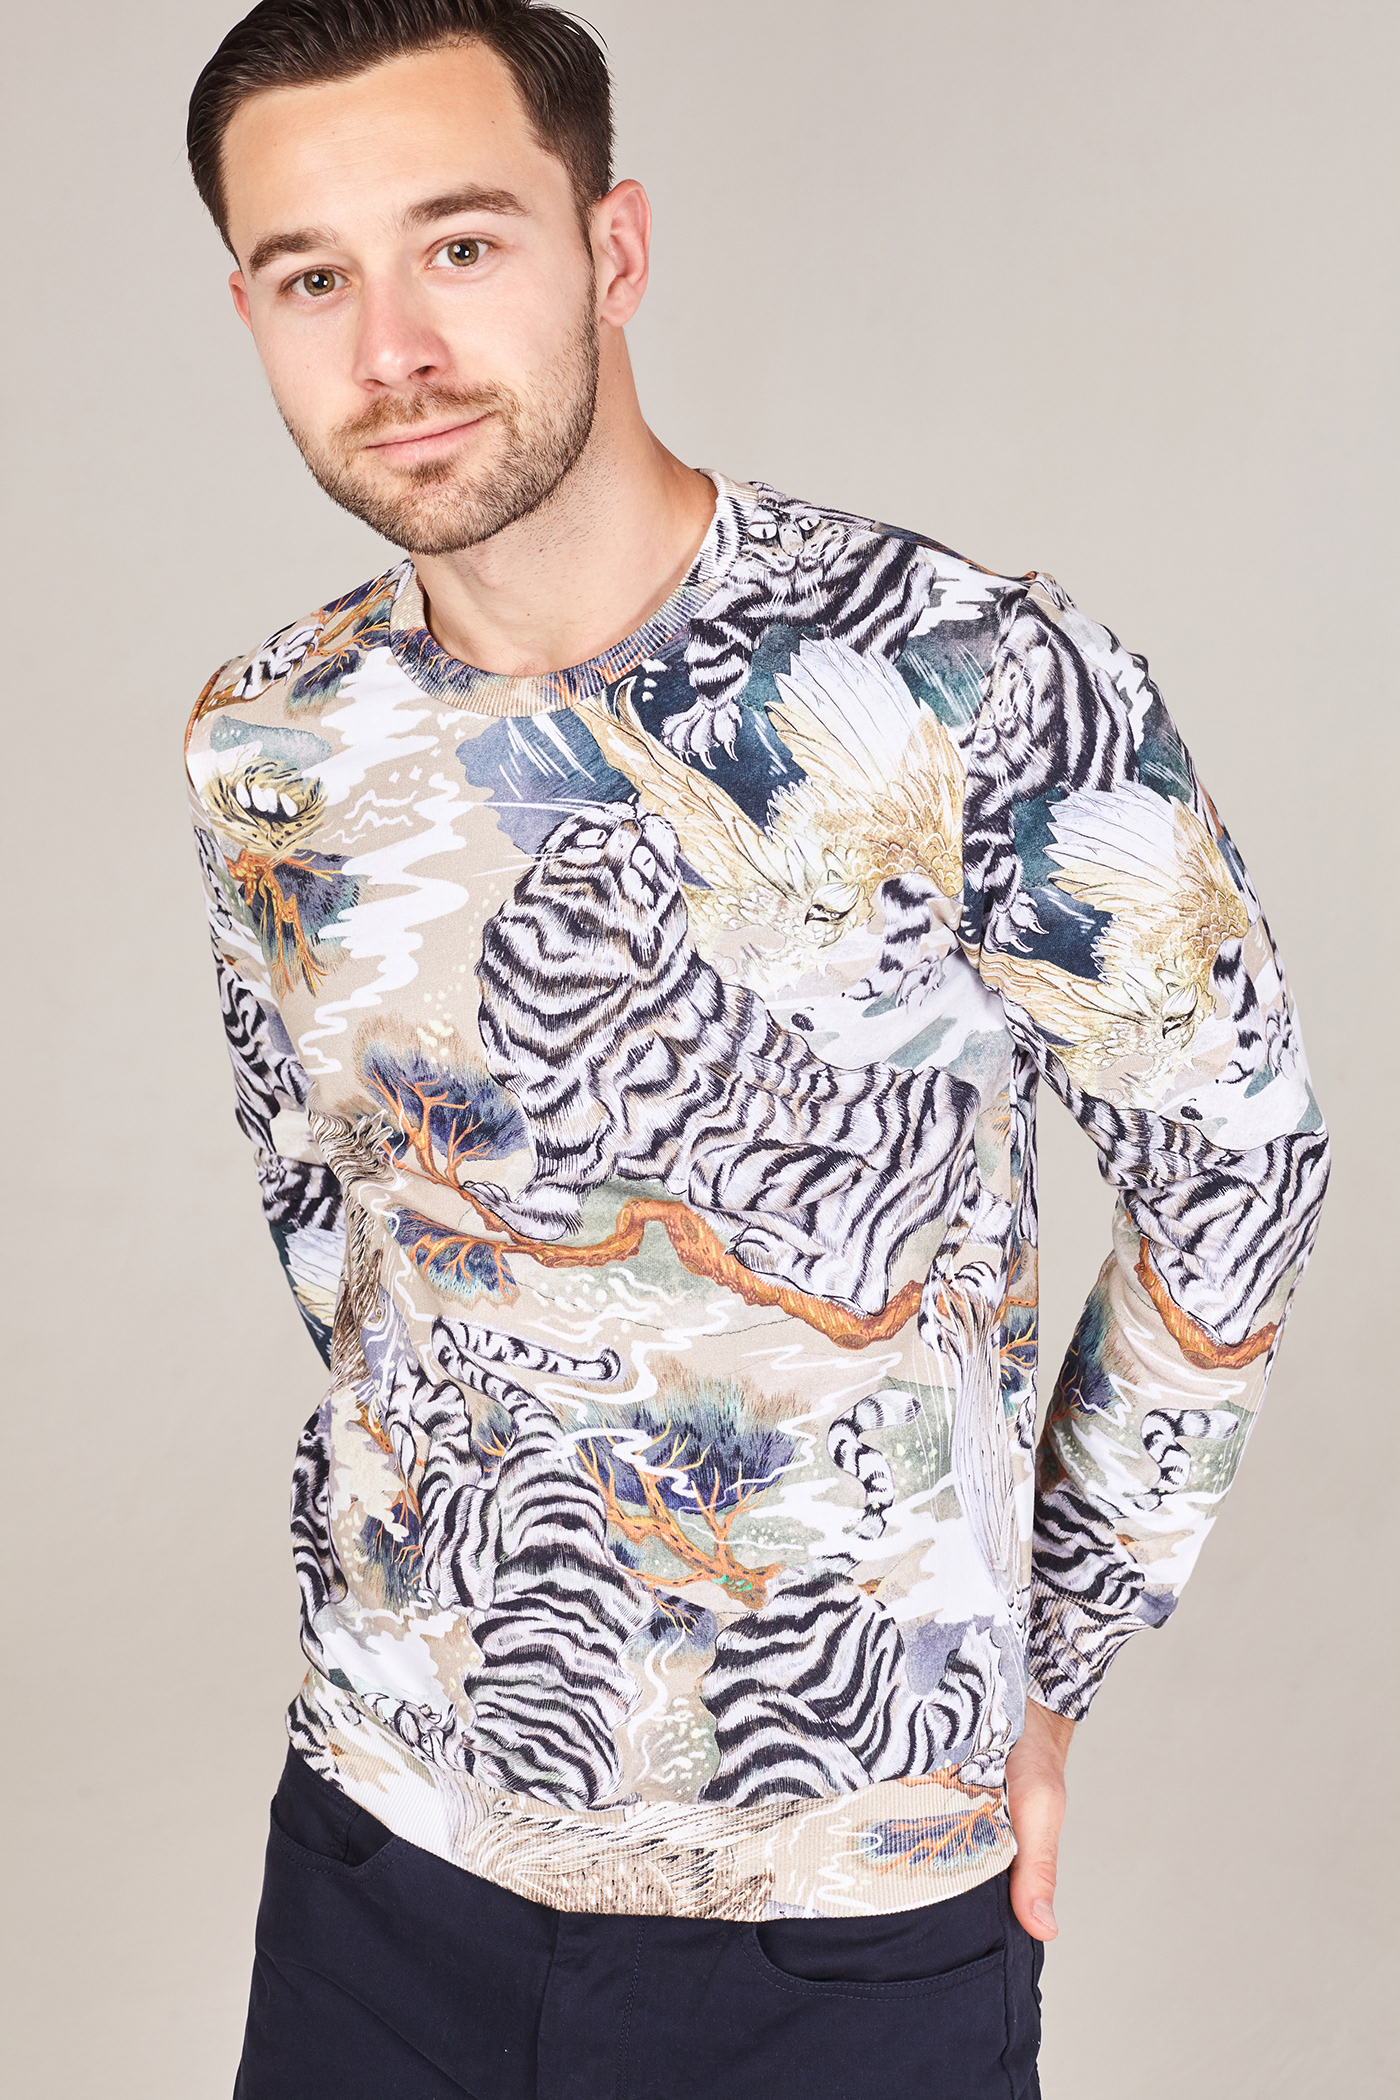 Fashion  pattern botanical ILLUSTRATION  dasha denke tiger eagle Sweatshirt Nature brown